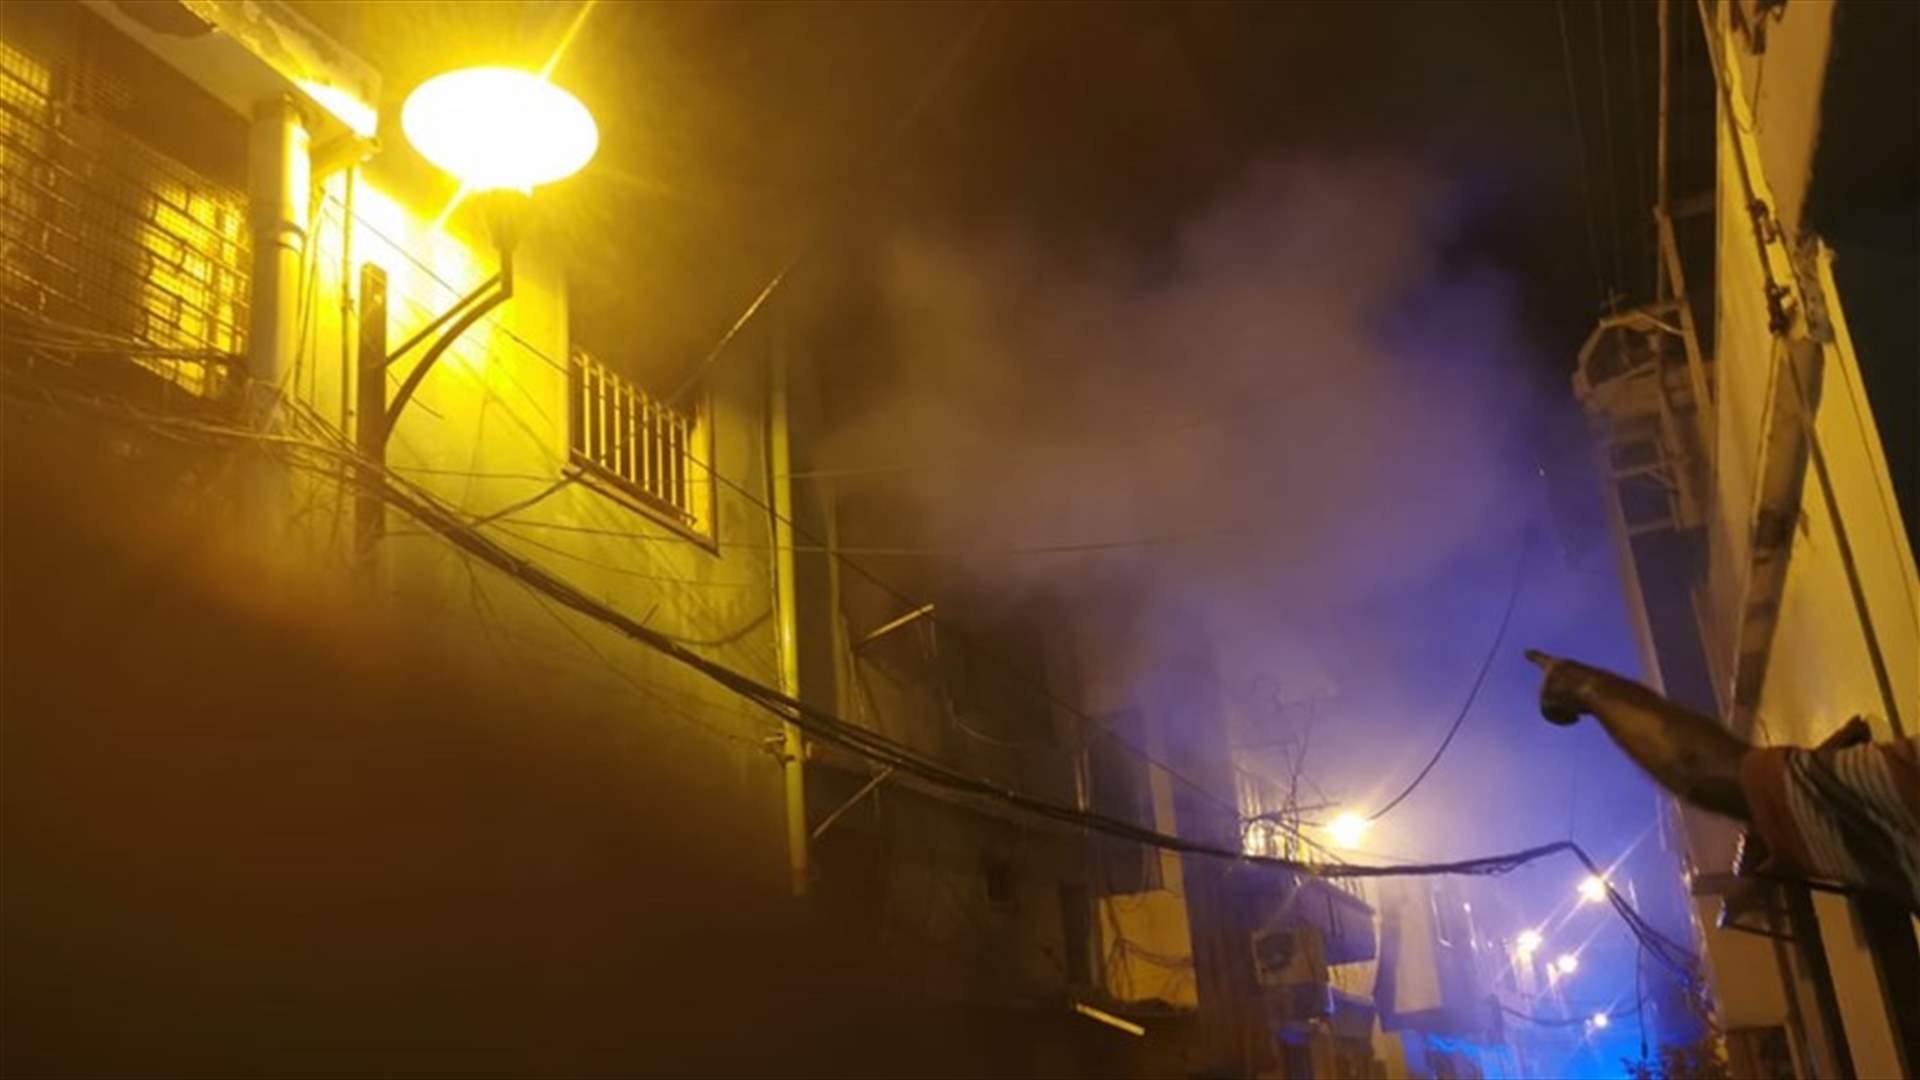 إخماد حريق داخل مبنى في الاشرفية ونقل مصابة الى مستشفى الكرنتينا